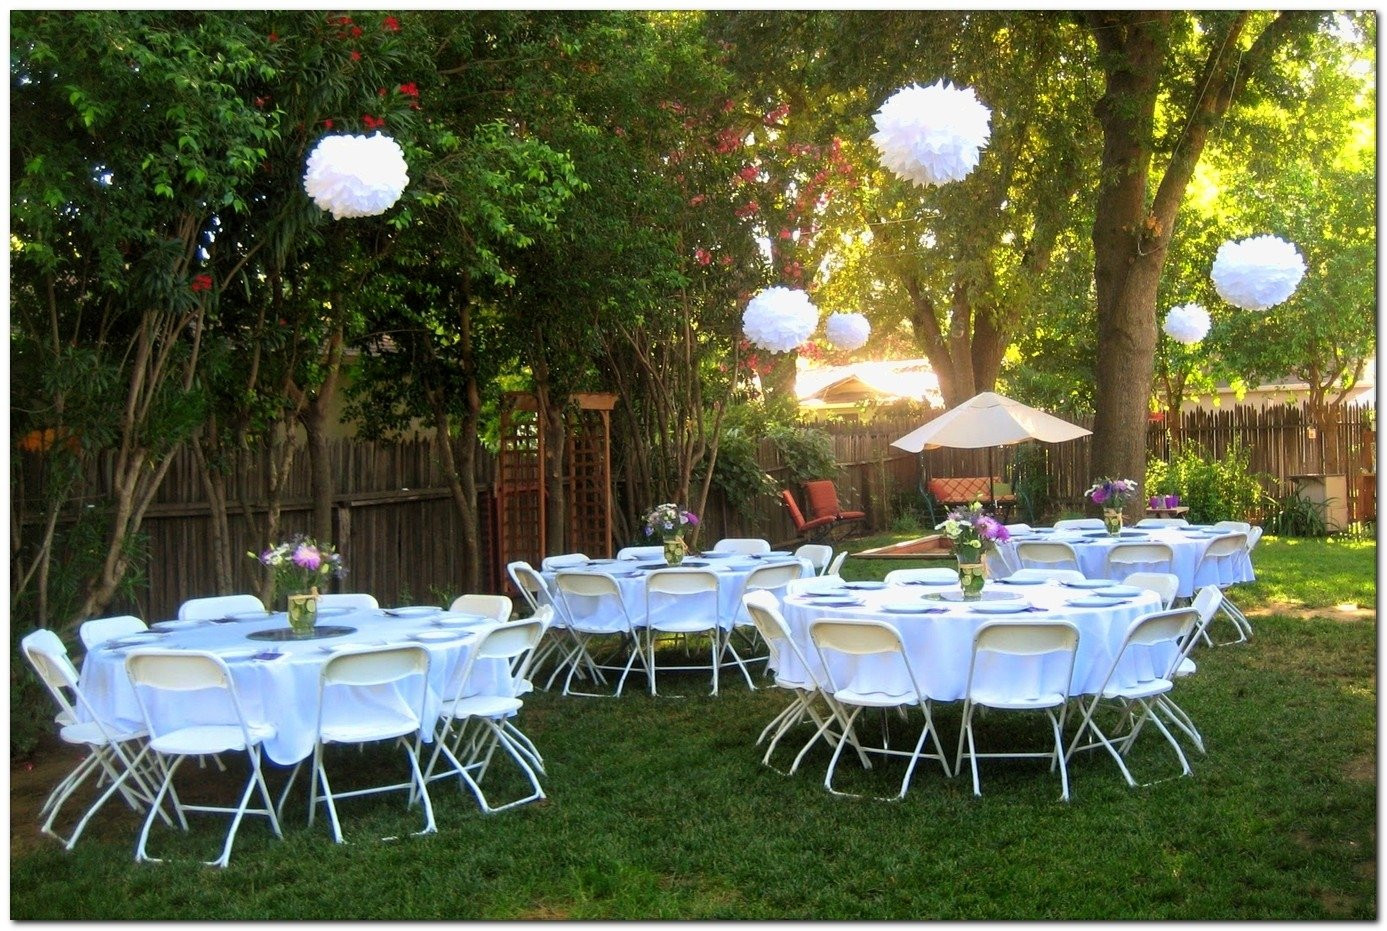 Graduation Small Backyard Party Ideas
 10 Cute Small Wedding Ideas A Bud 2019